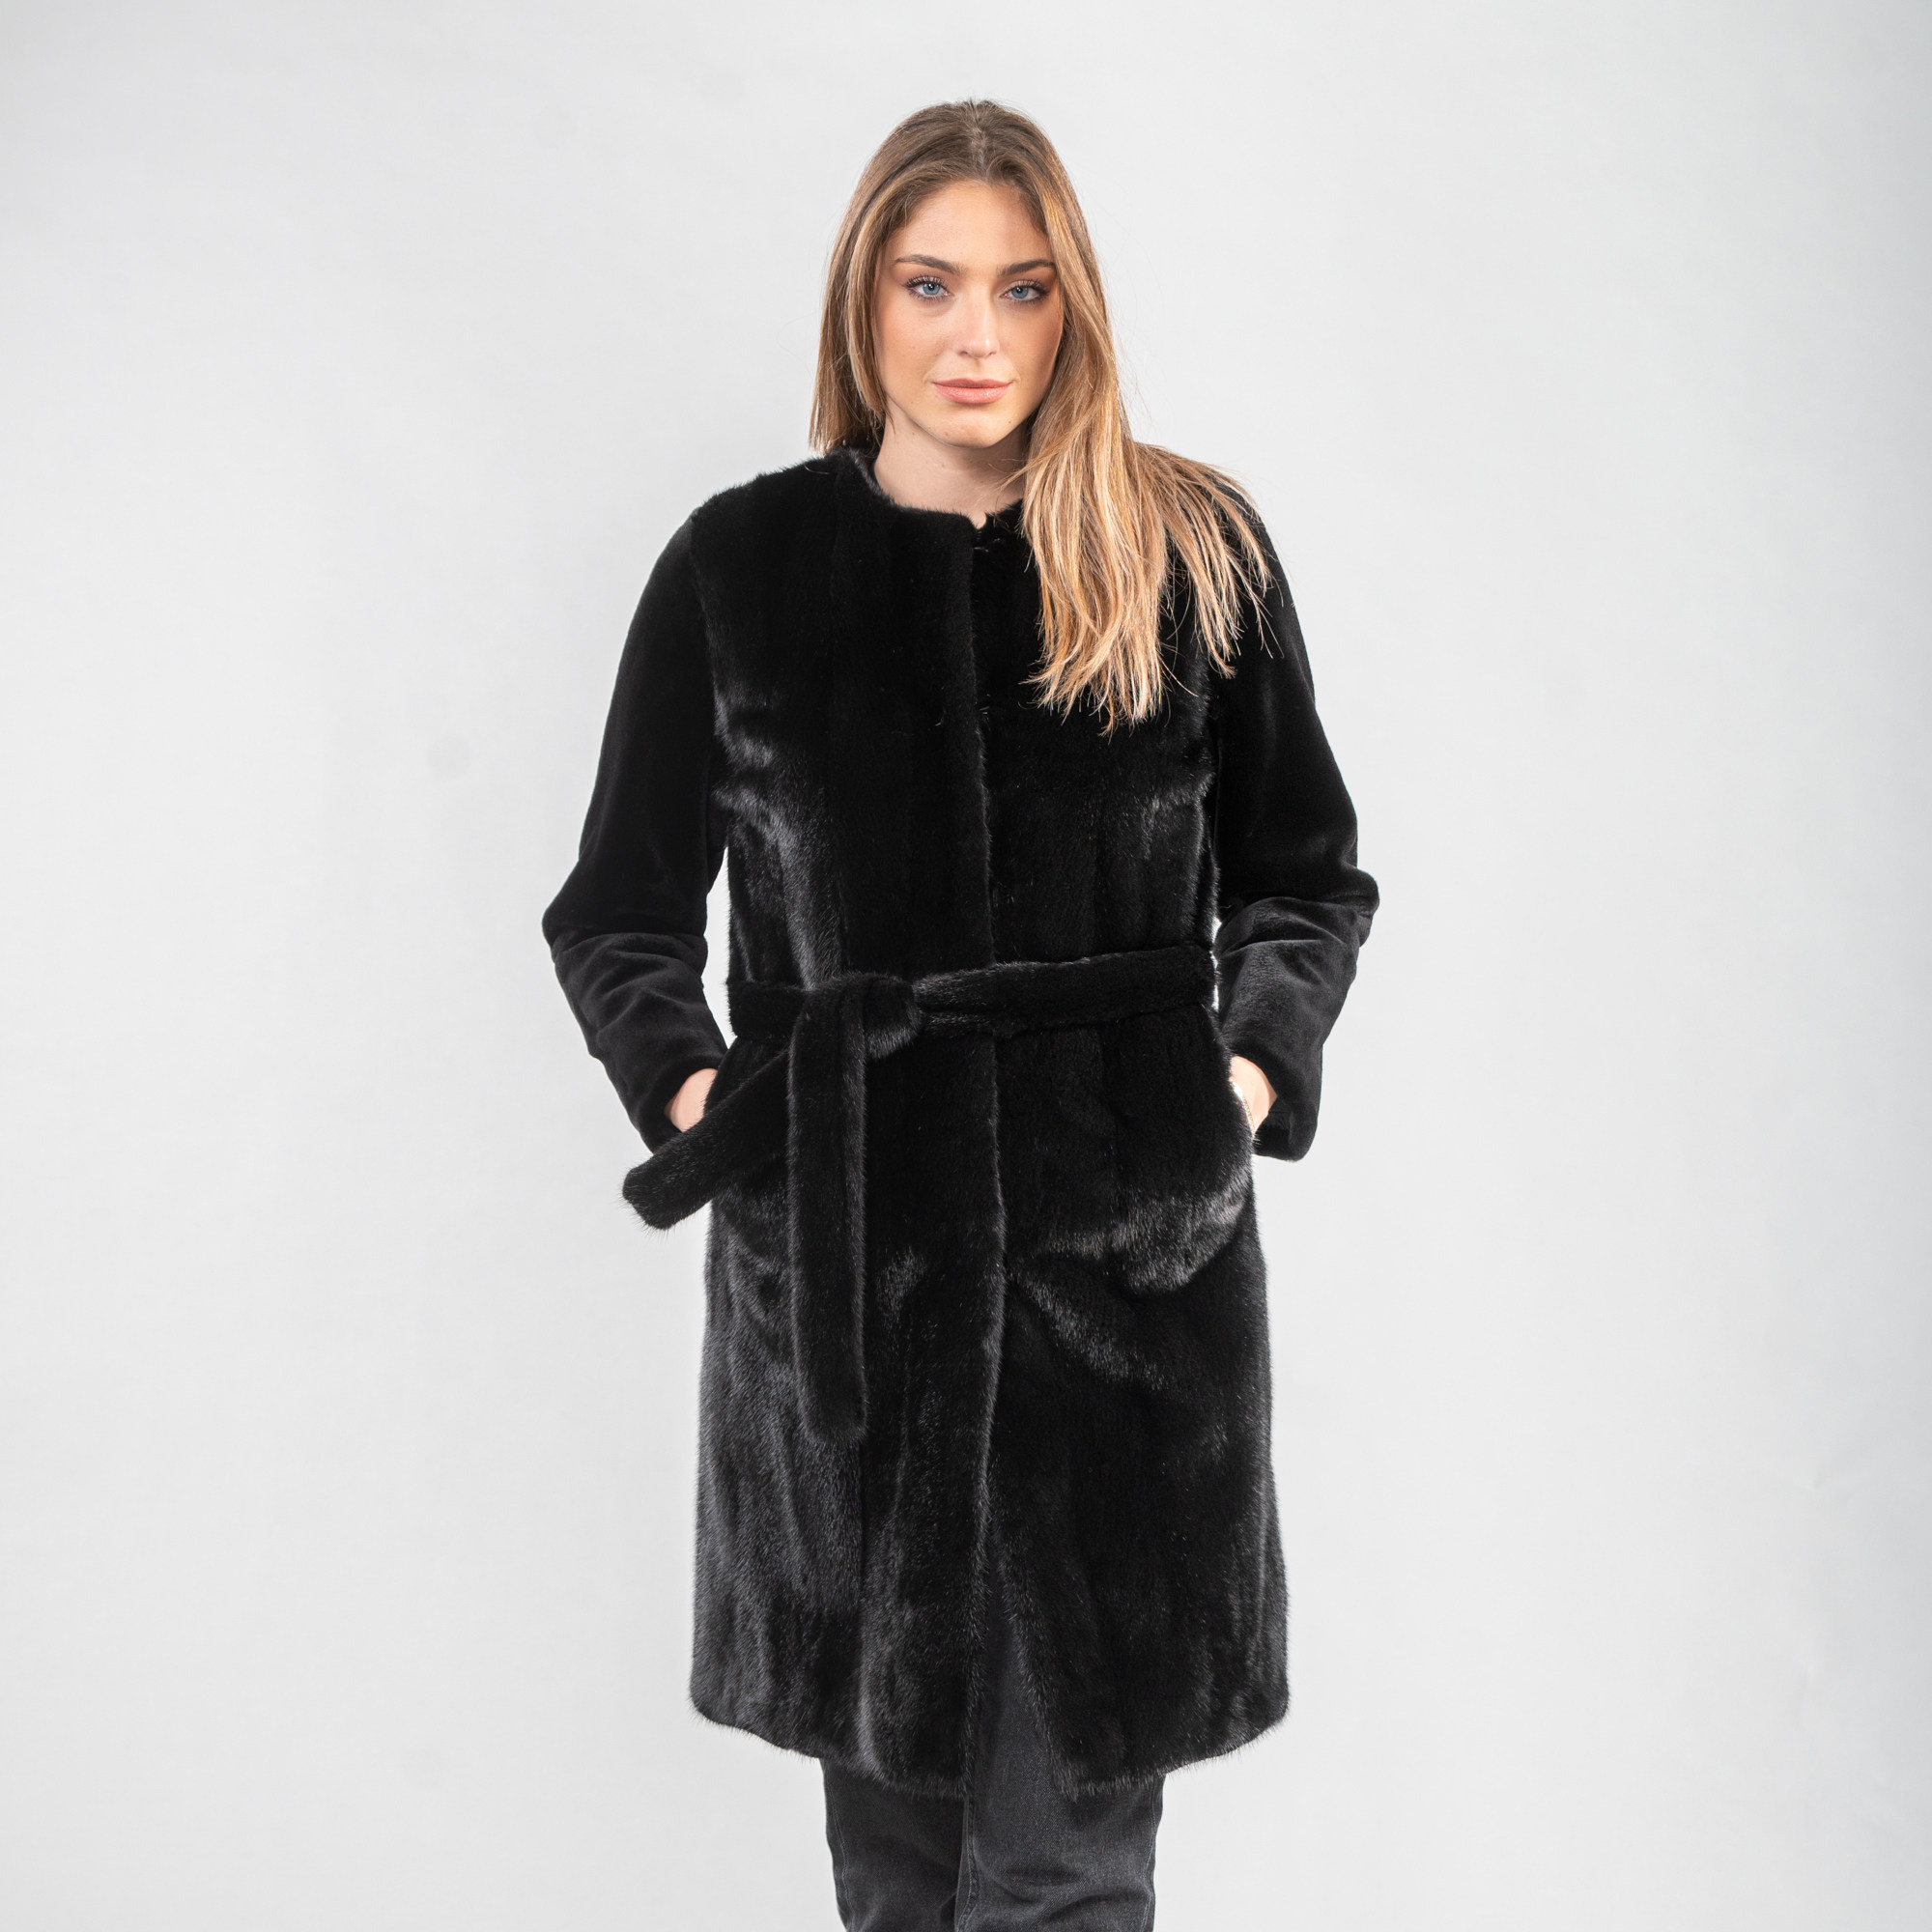 μαύρο γούνινο βιζόν παλτό με ζώνη